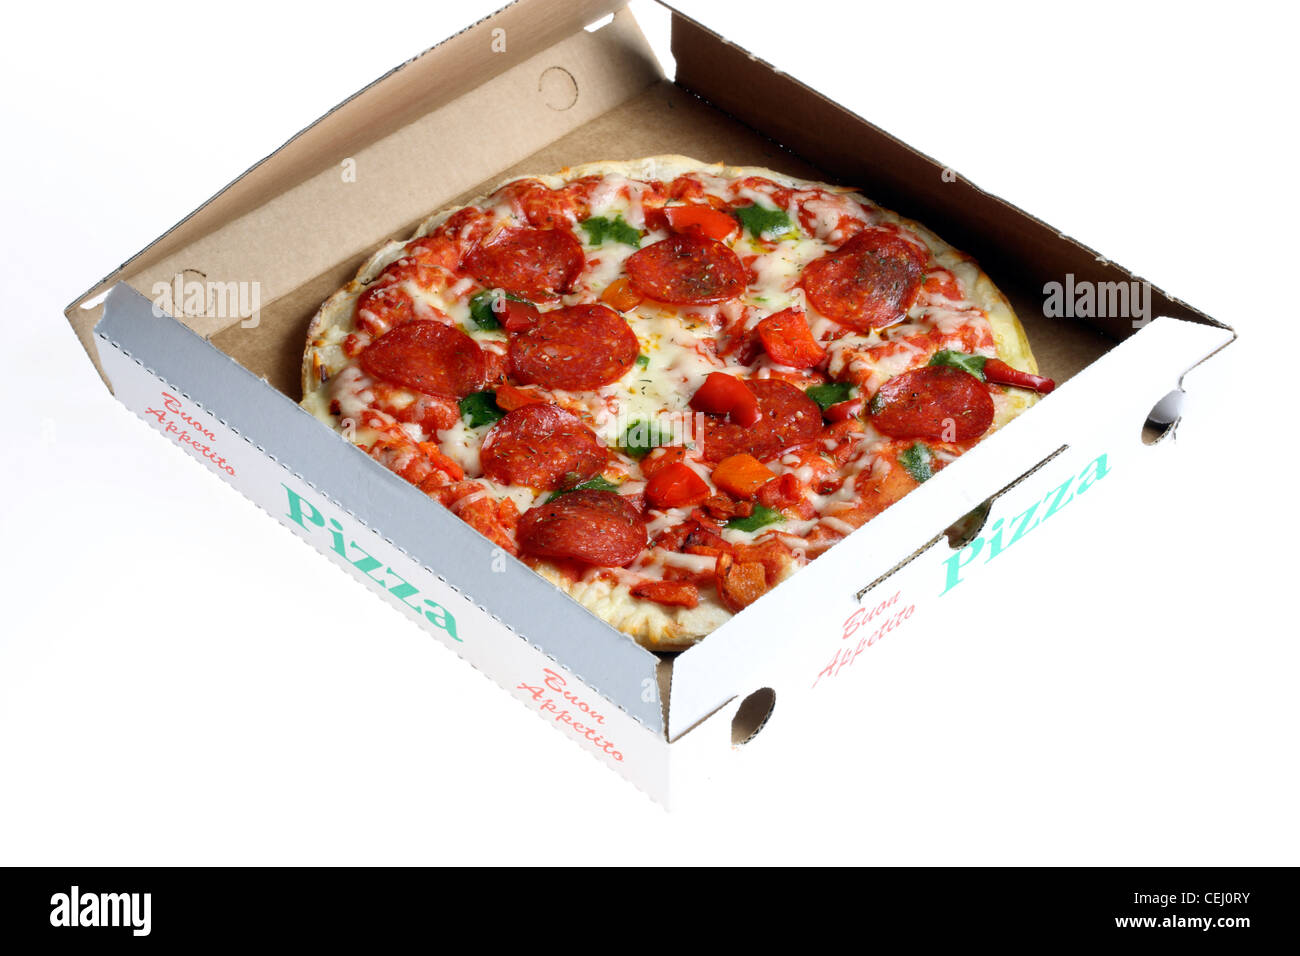 Ernährung, Fast-Food. Pizza zum mitnehmen, in einem Karton, Pizza-Schachtel. Stockfoto